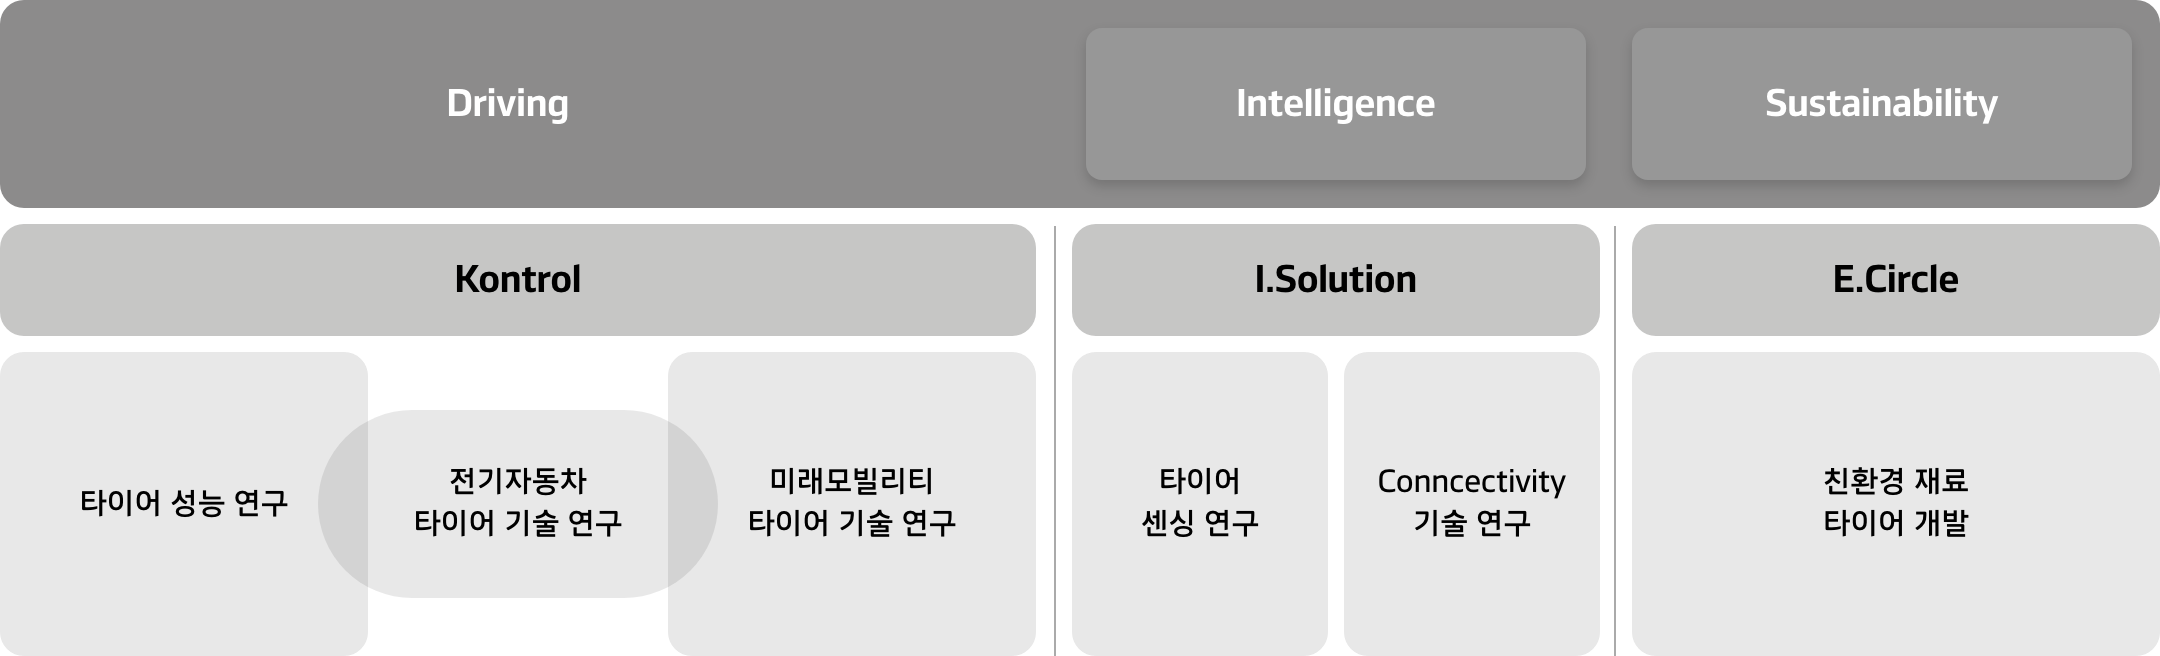 한국타이어앤테크놀로지-이노베이션-기술철학-HIP